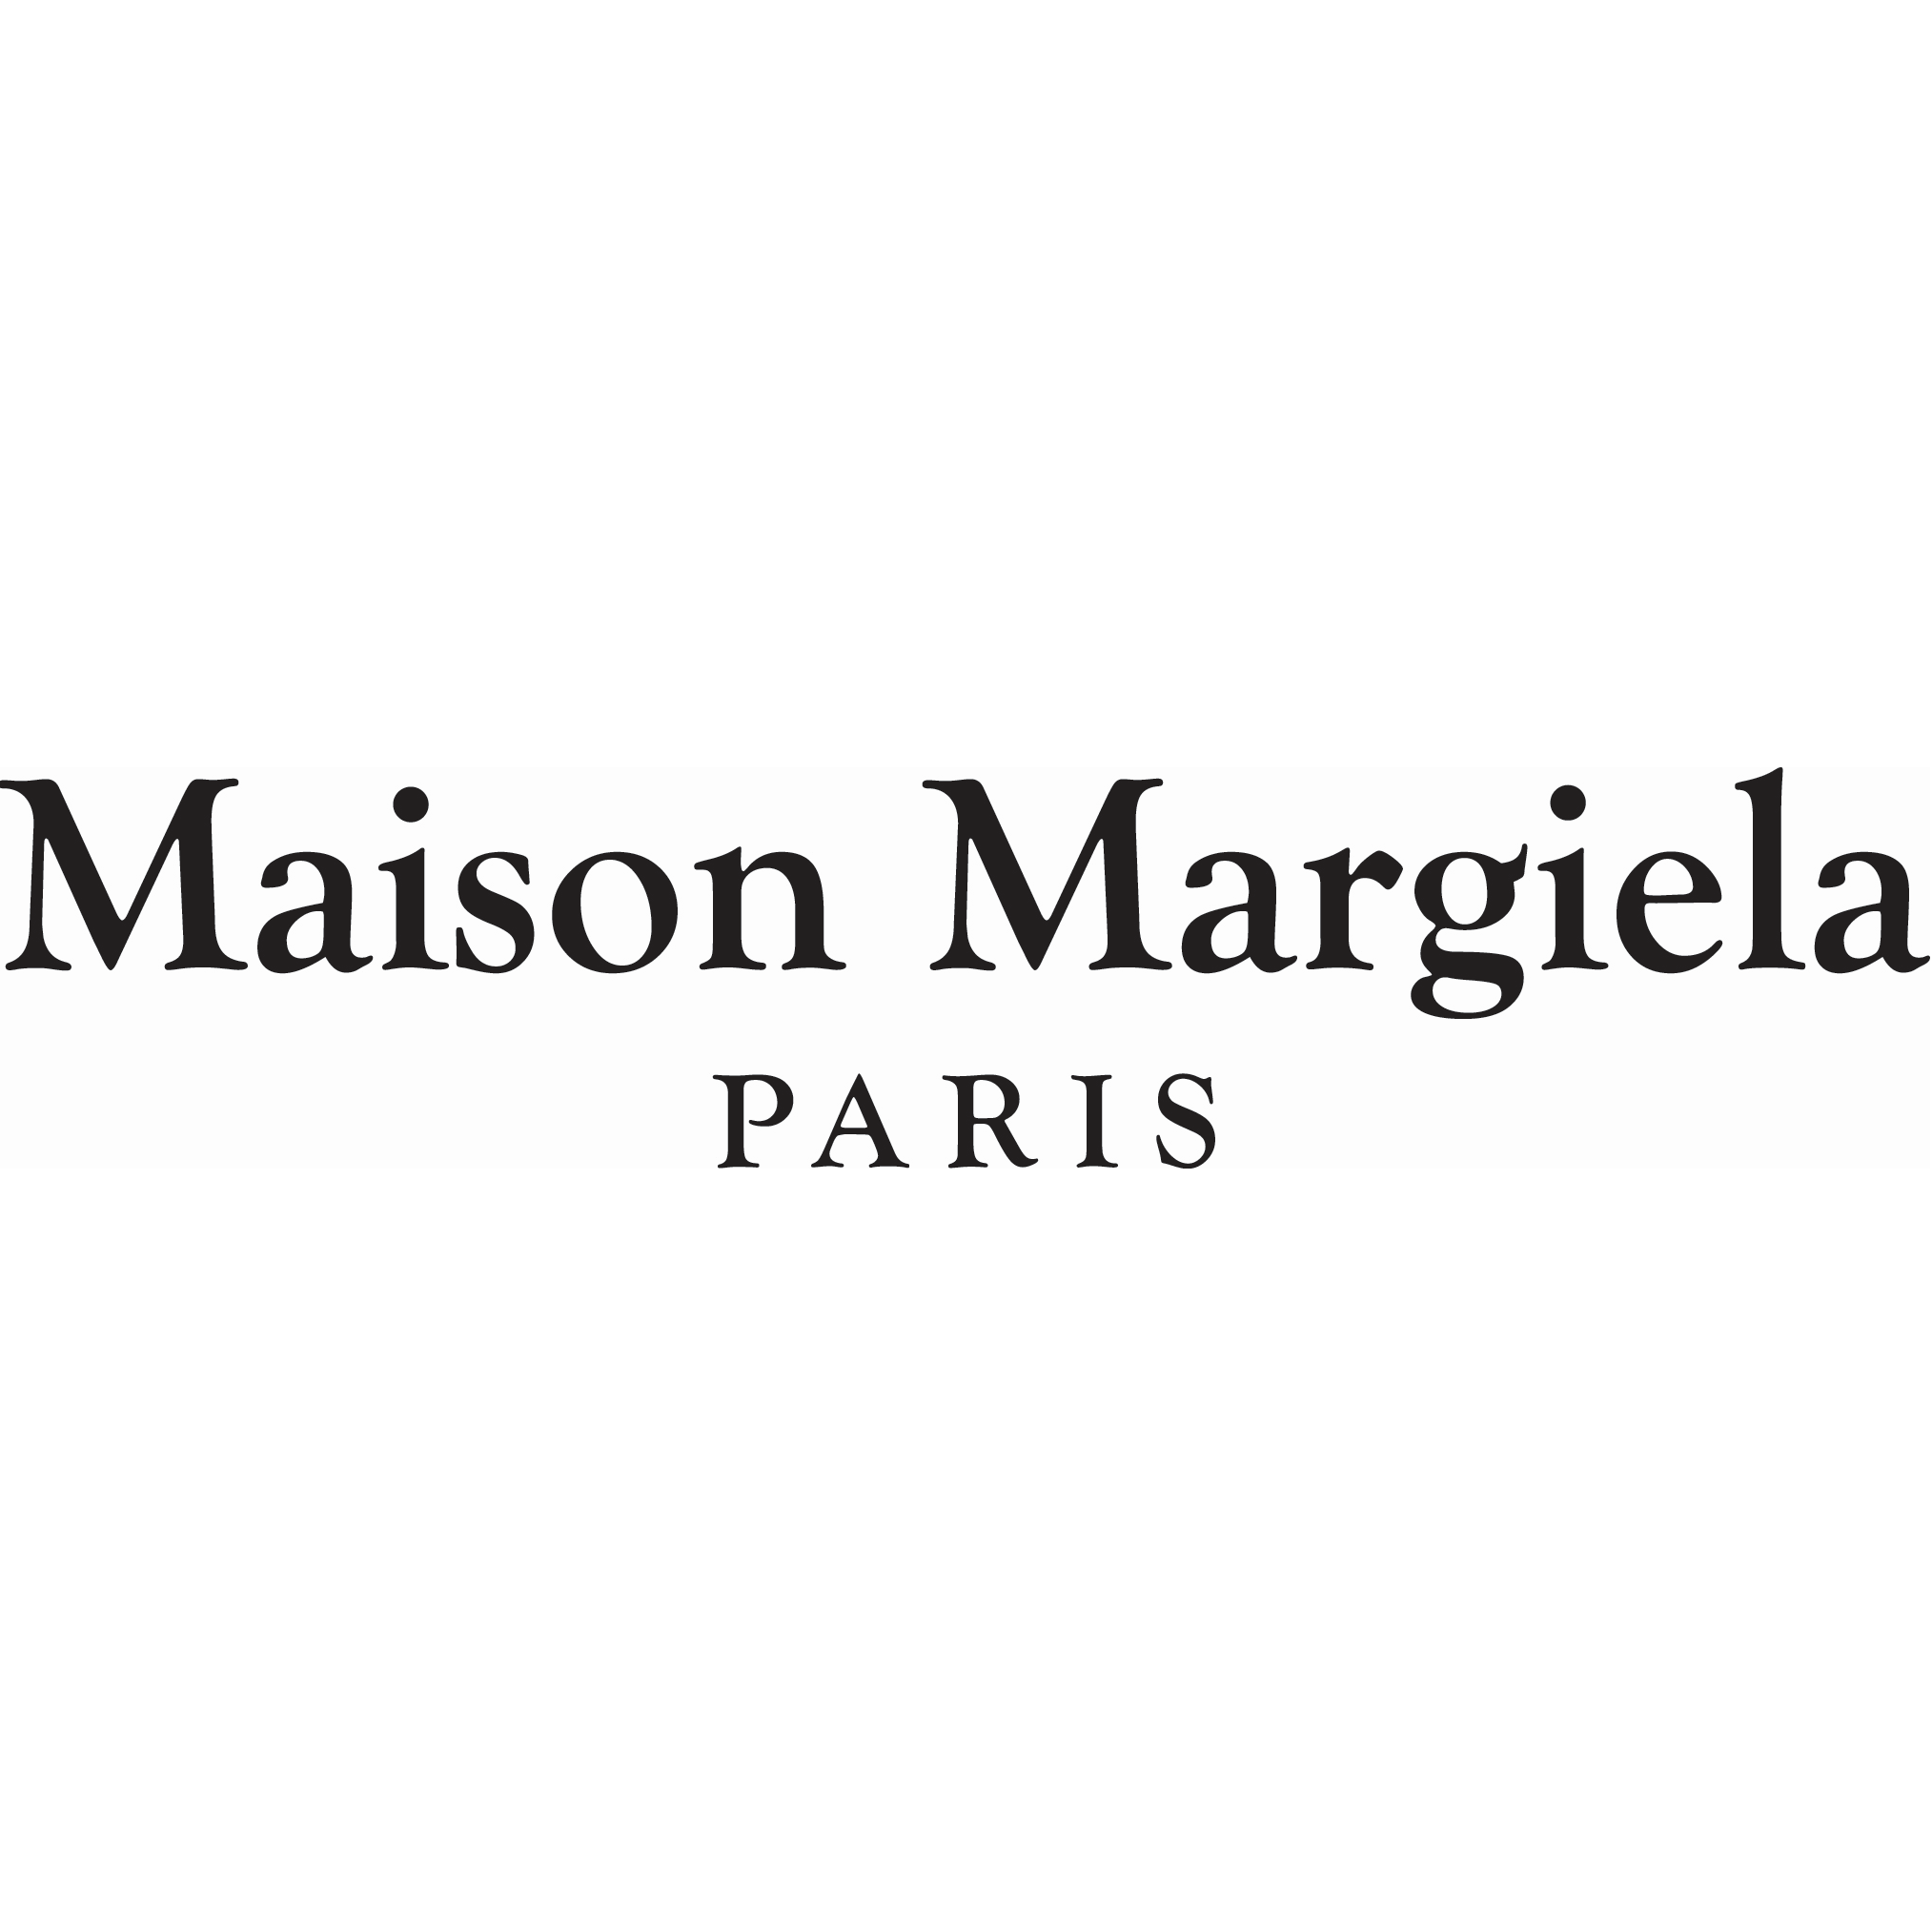 Maison Margiela Bicester Outlet Logo